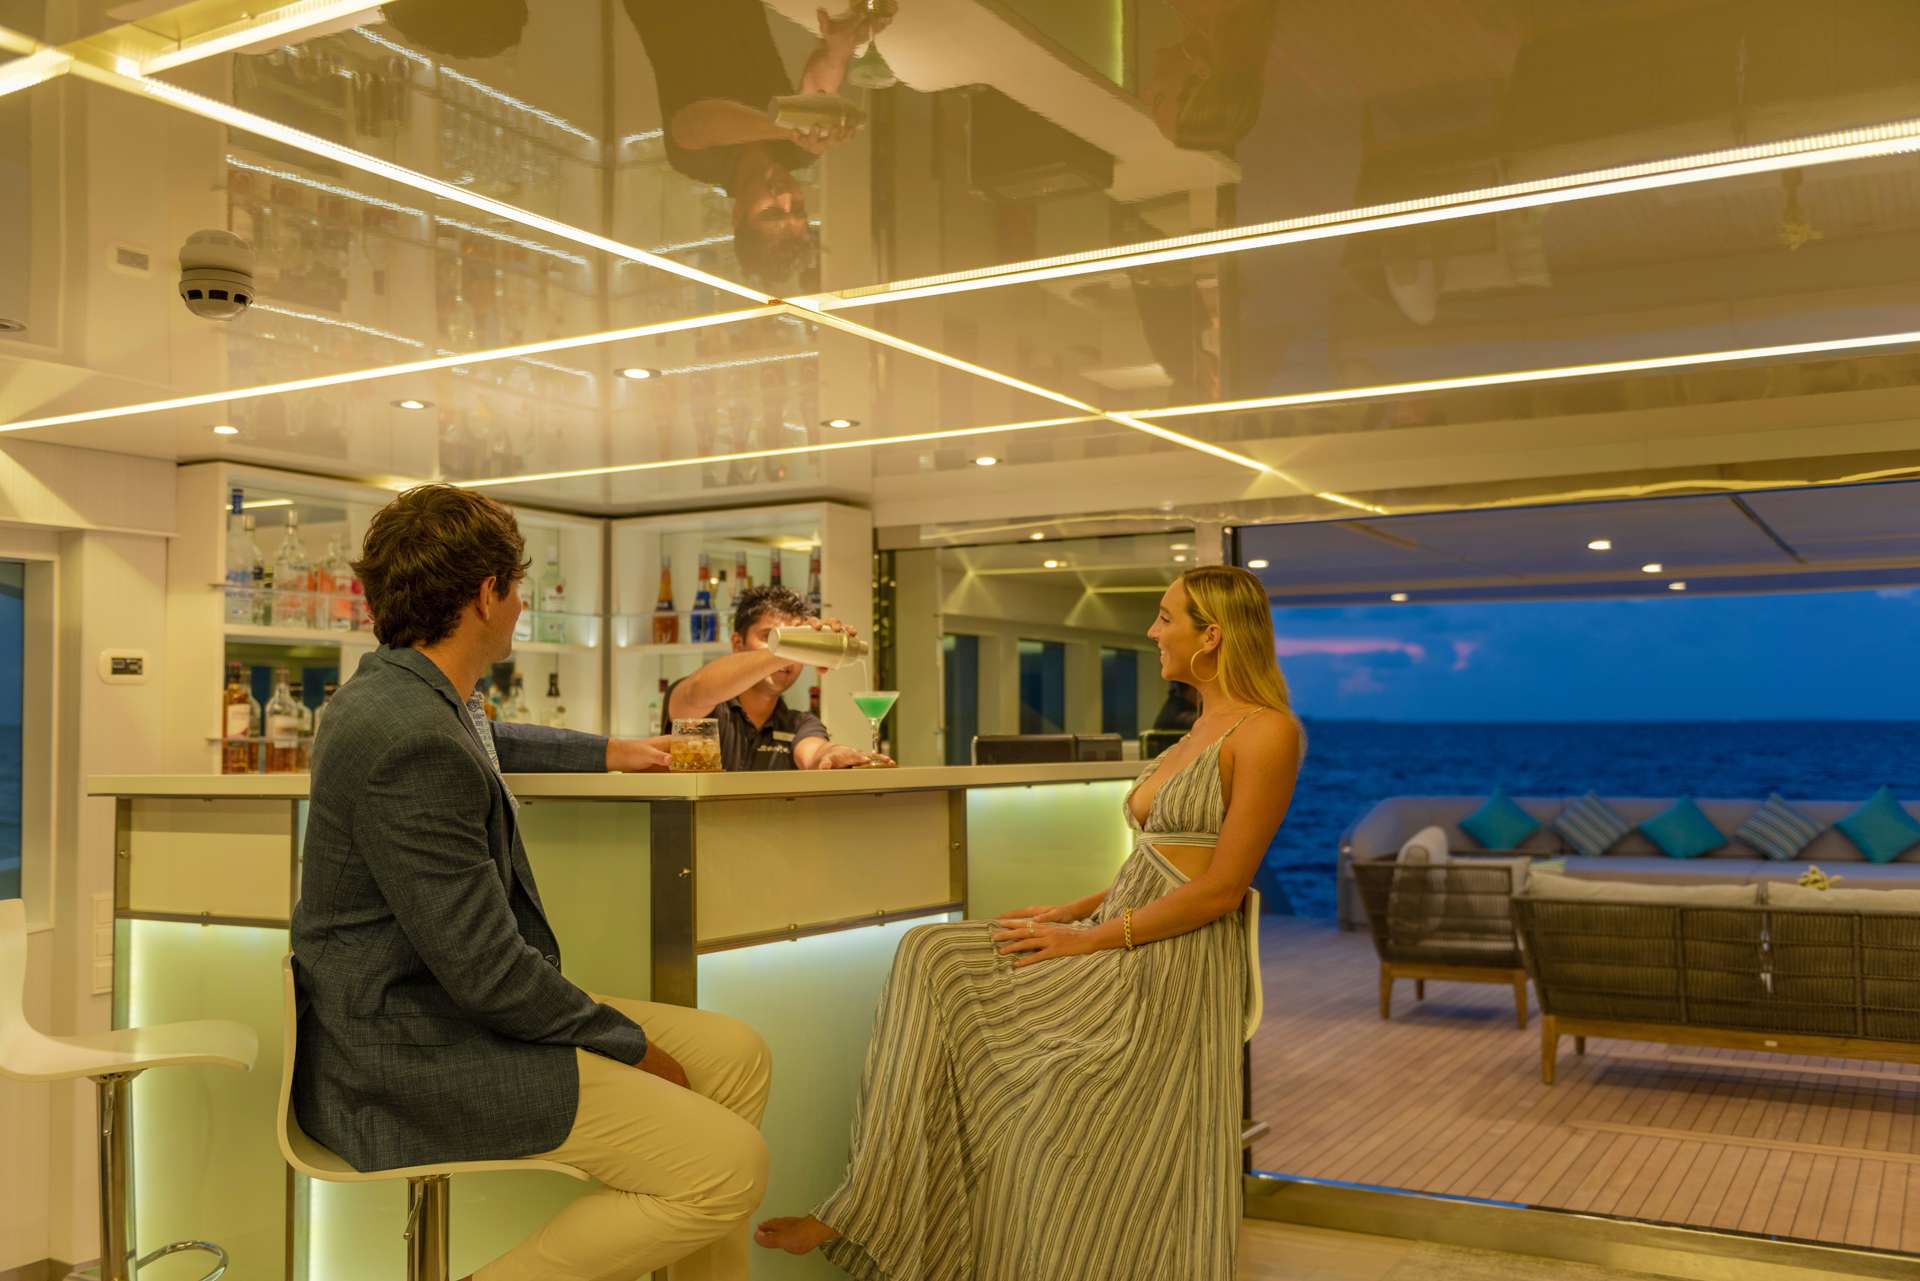 searex - Luxury yacht charter Seychelles & Boat hire in Indian Ocean & SE Asia 3